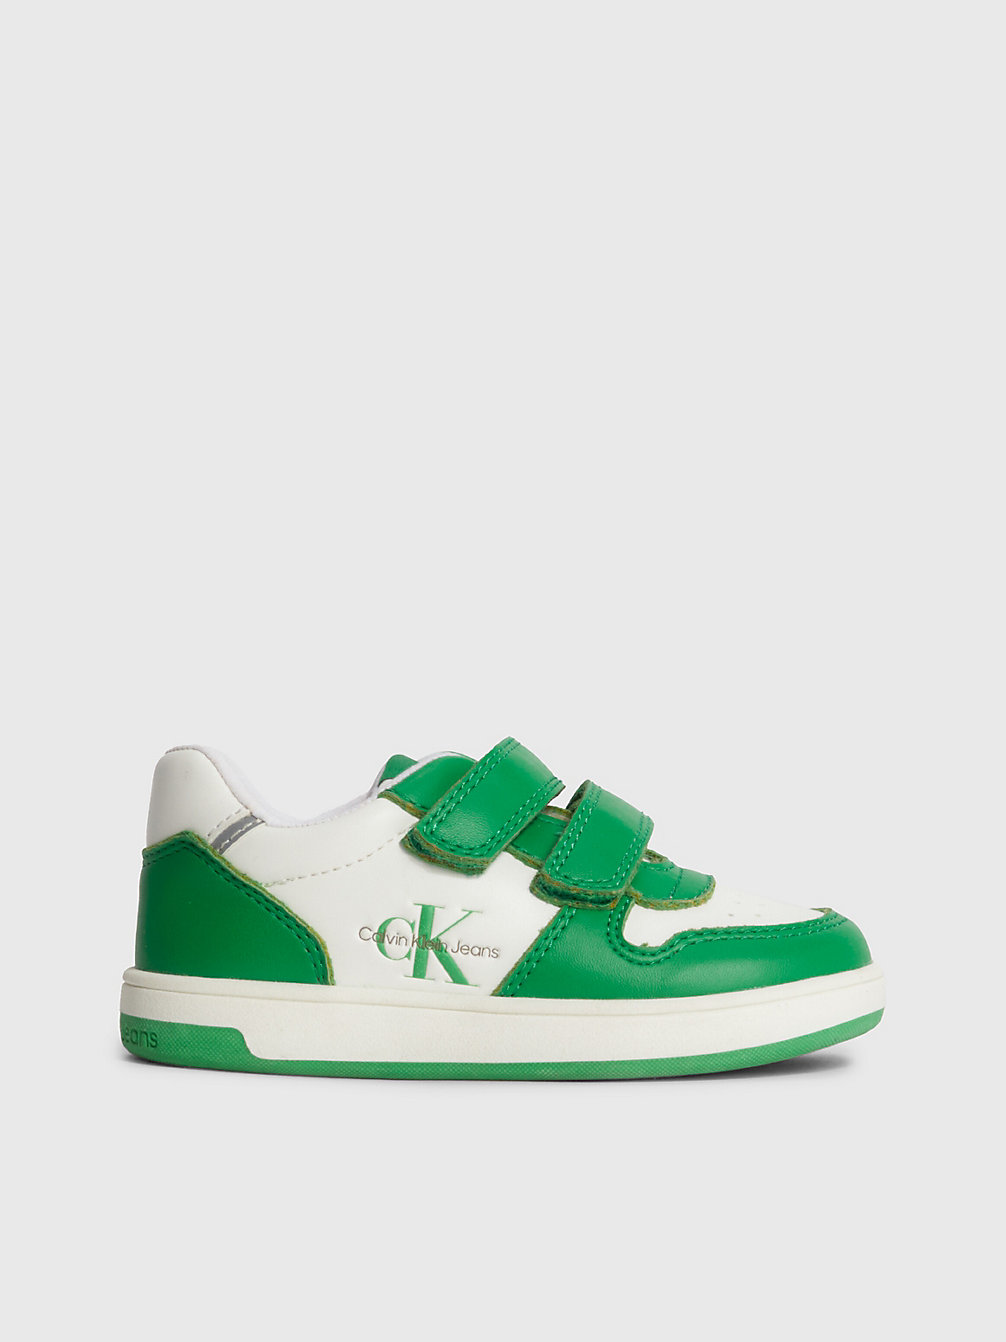 GREEN / WHITE Sneakers Mit Klettverschluss Für Kleinkinder Und Kinder undefined kids unisex Calvin Klein